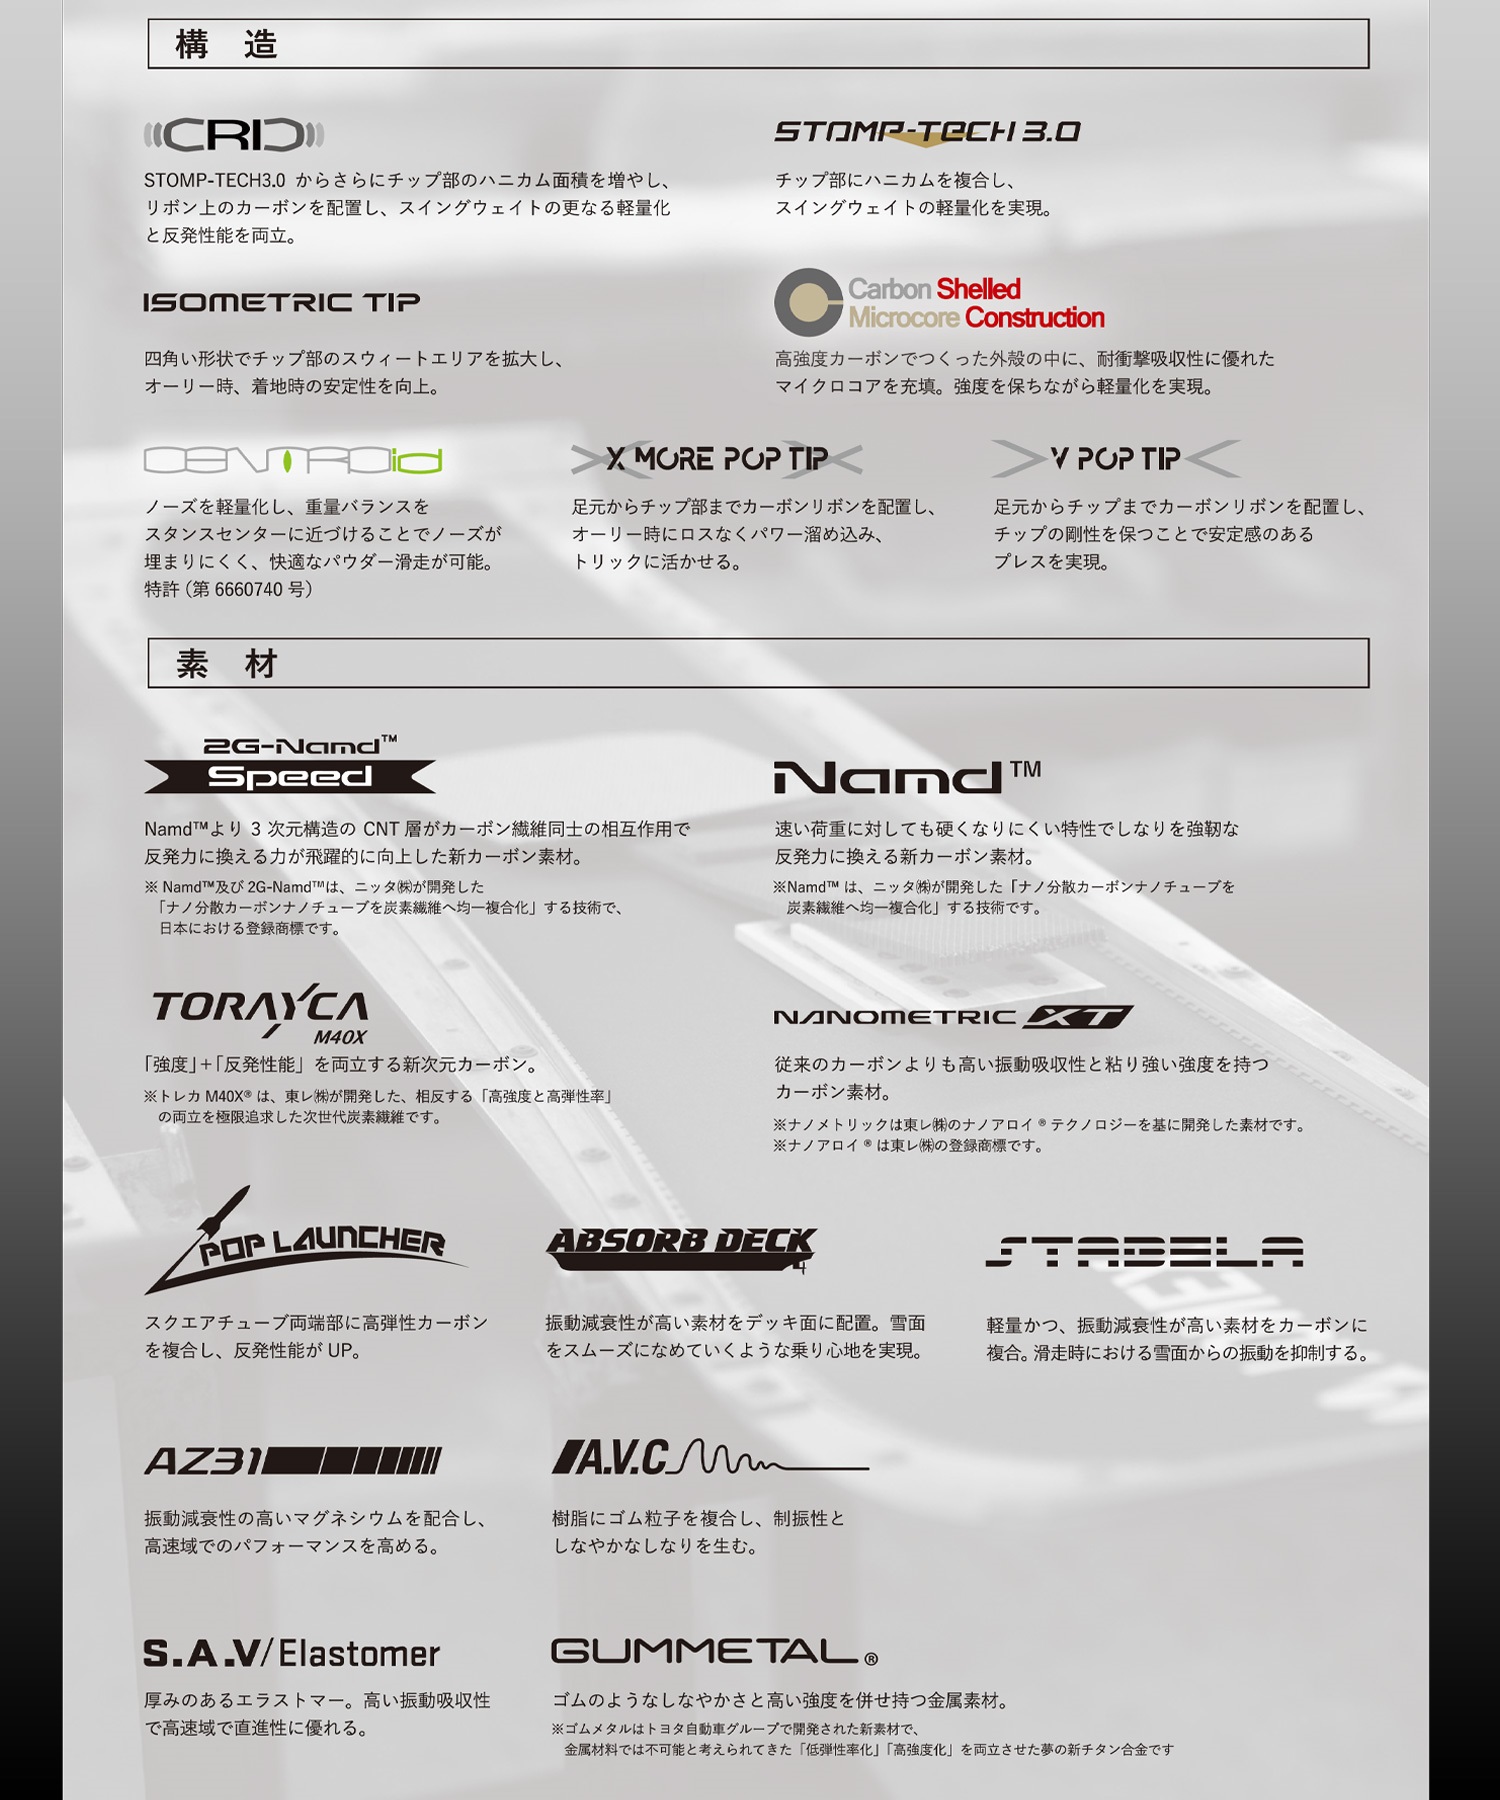 【早期購入】YONEX ヨネックス スノーボード 板 メンズ ハンマーヘッド 国産 SYMARC ムラサキスポーツ 24-25モデル LL B15(BLACK-156cm)